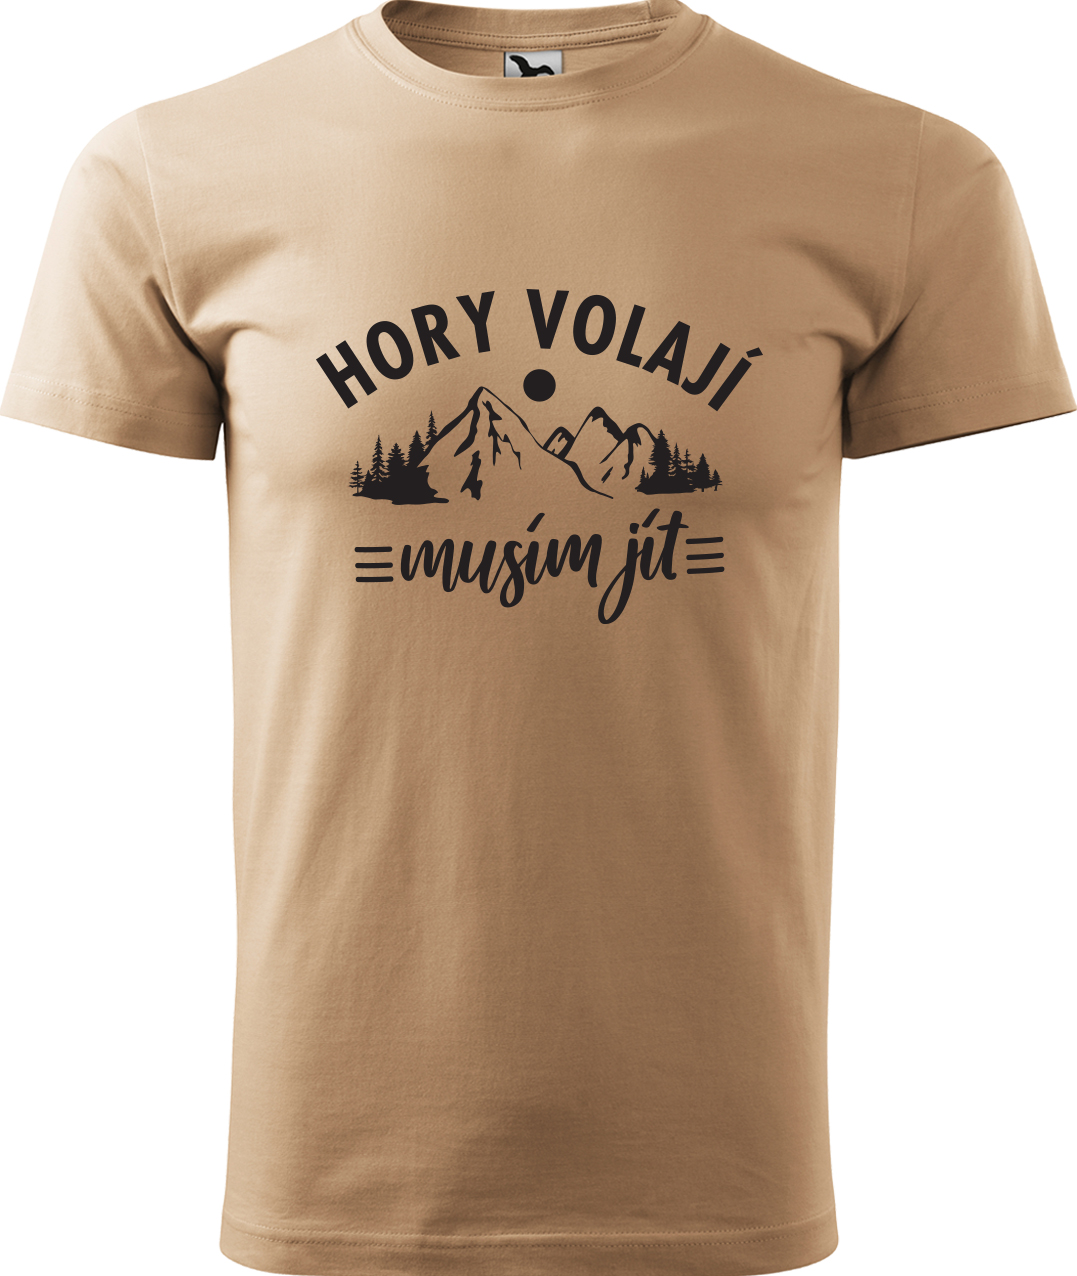 Pánské tričko na hory - Hory volají, musím jít Velikost: 2XL, Barva: Písková (08), Střih: pánský